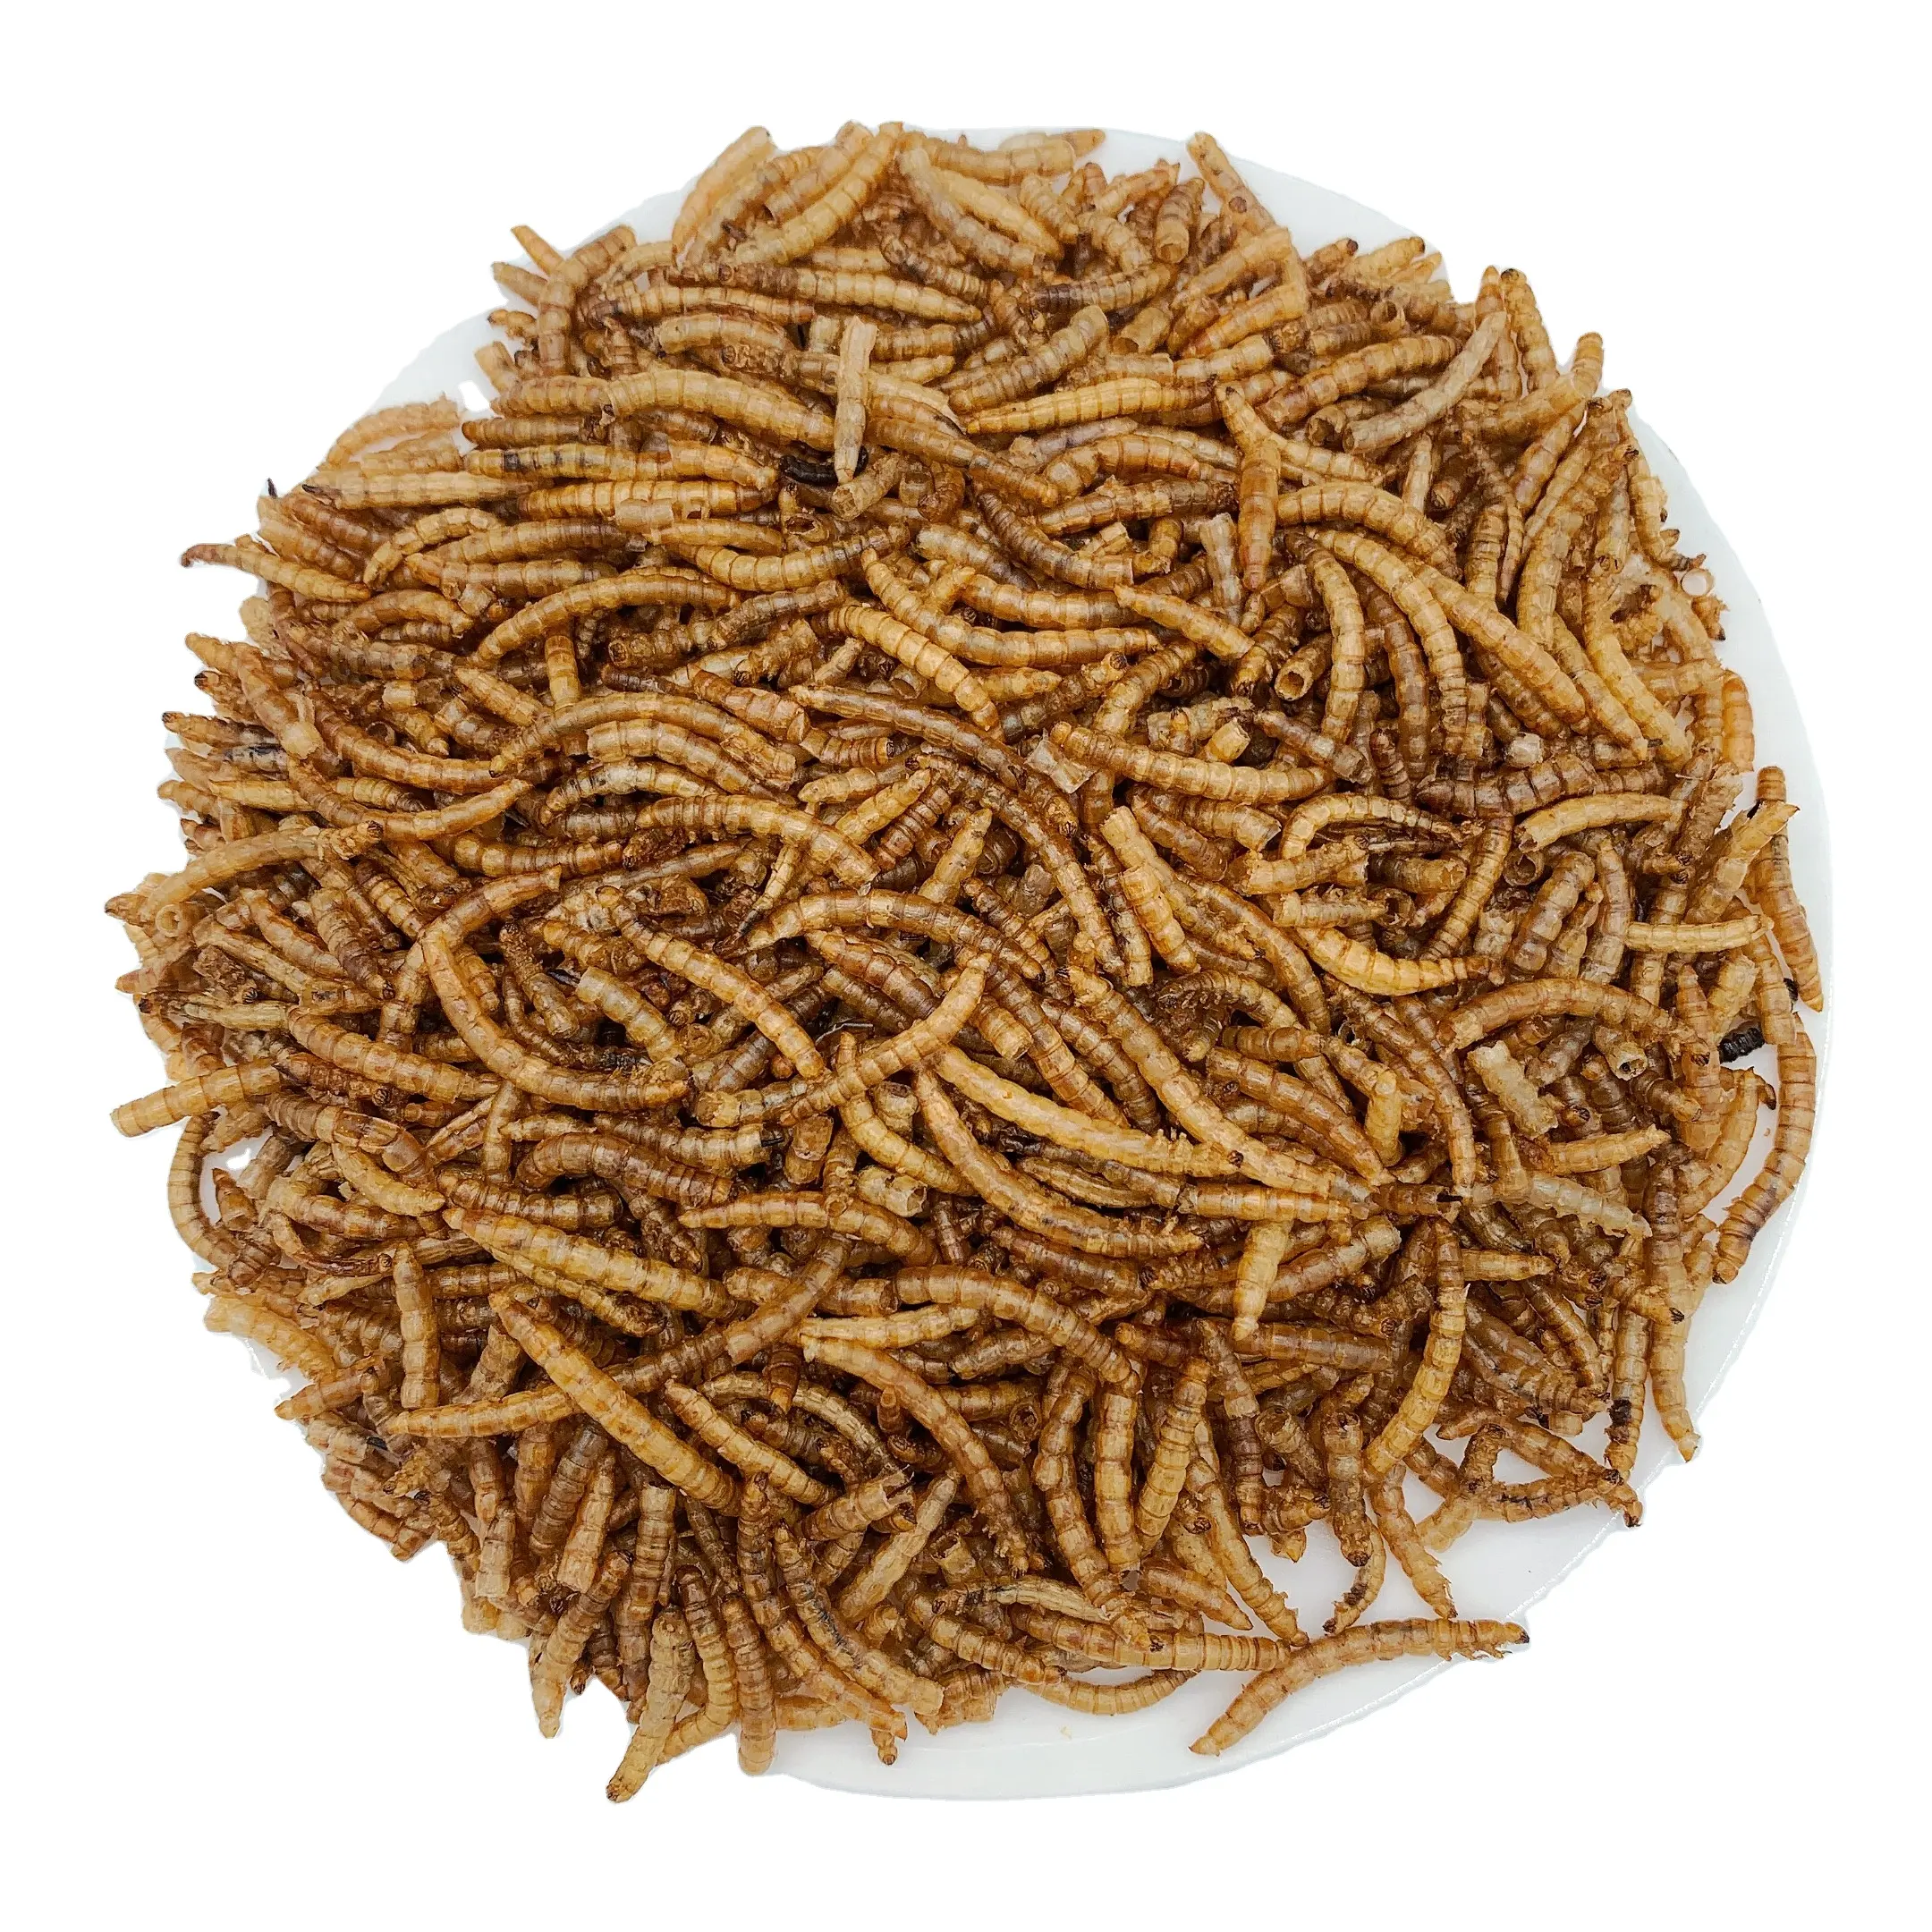 Pabrik langsung larva Protein tinggi nutrisi kaya serangga dapat dimakan makanan burung cacing salju makanan umpan akuatik grosir